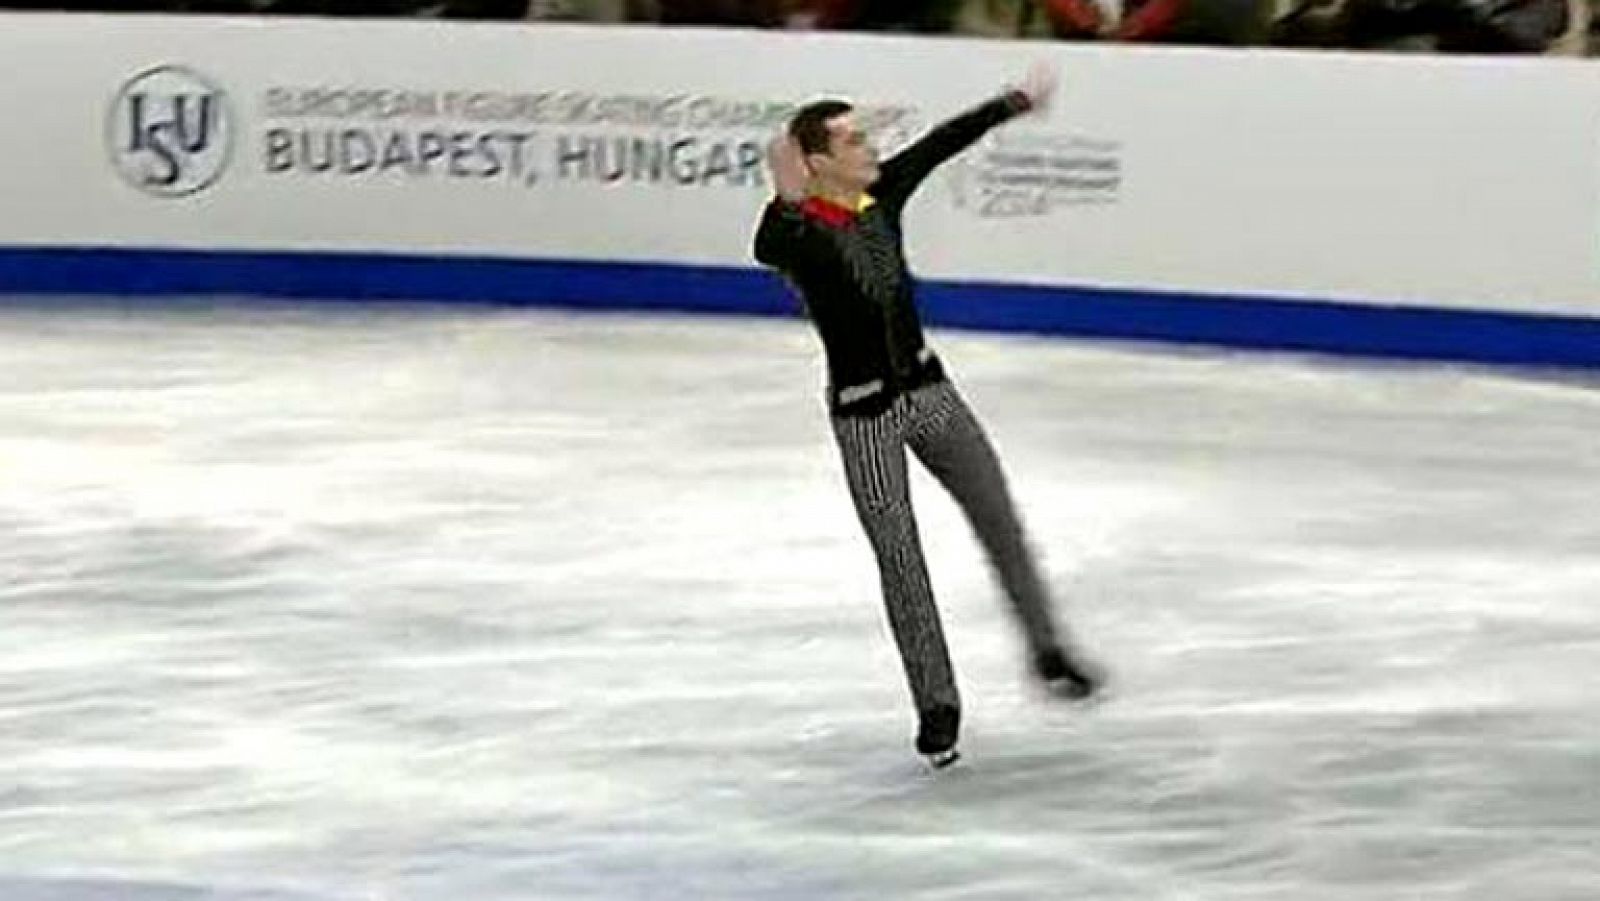 El español Javier Fernández ha sido el mejor en el programa corto de la competición individual masculina de los Campeonatos de Europa de patinaje artístico de Budapest, y será el sábado el favorito para revalidar el título en el largo, al que también